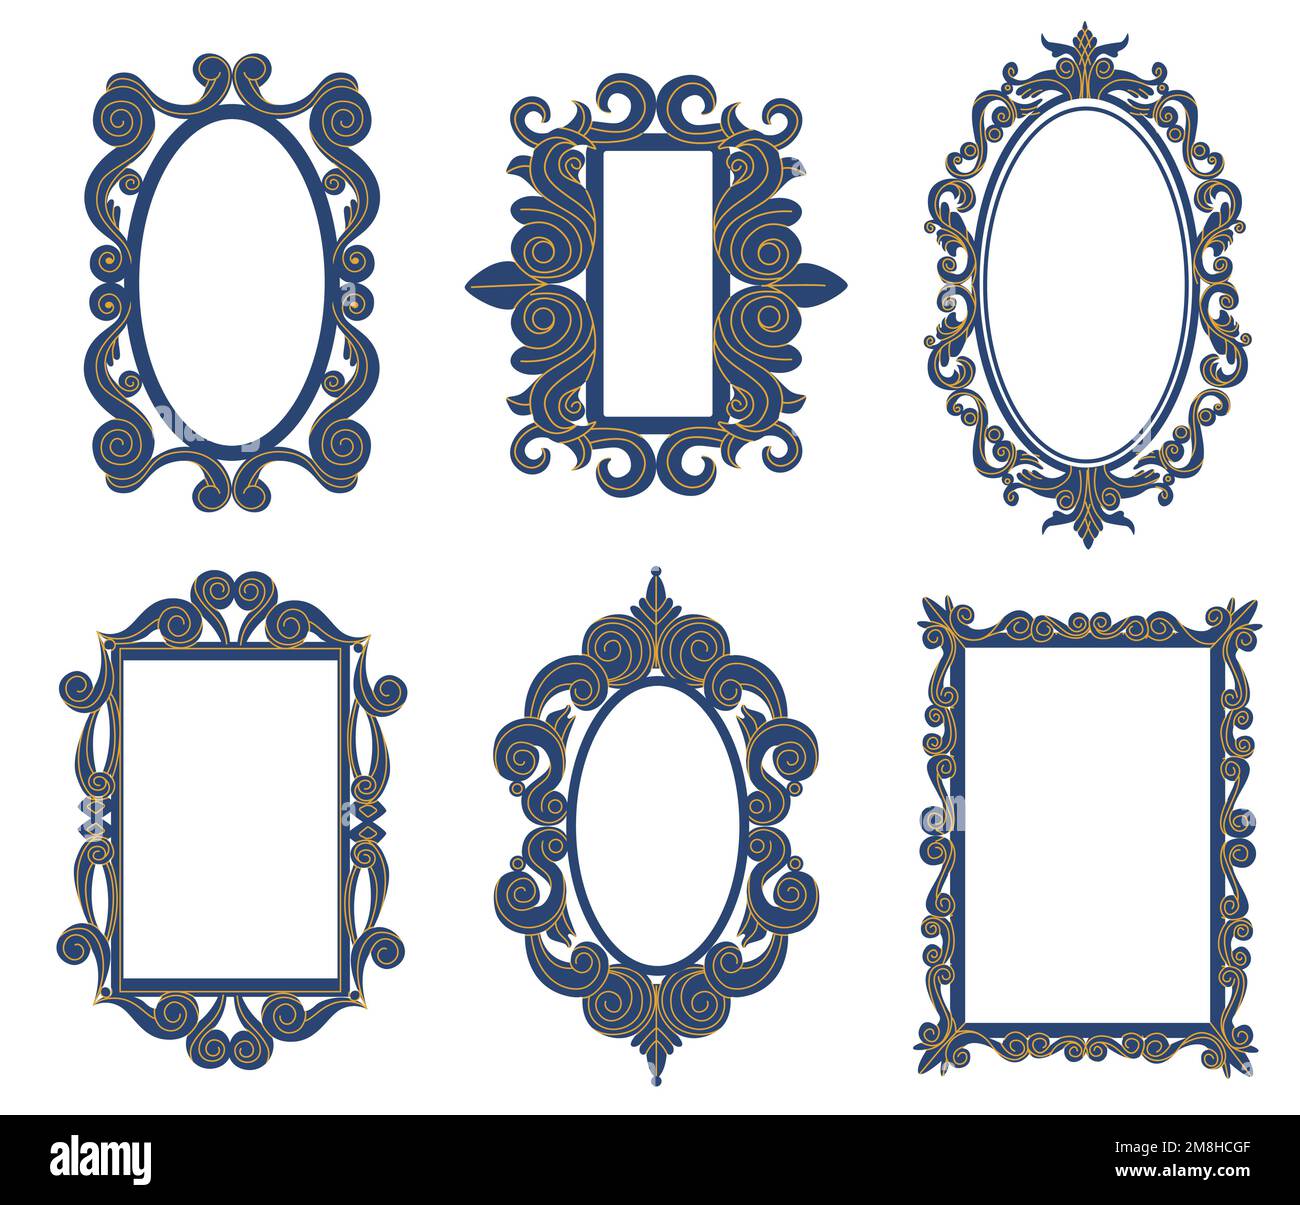 Miroirs décoratifs anciens style baroque vintage. Bordures élégantes avec des éléments courbes de forme différente tels que ovale et rectangle Illustration de Vecteur